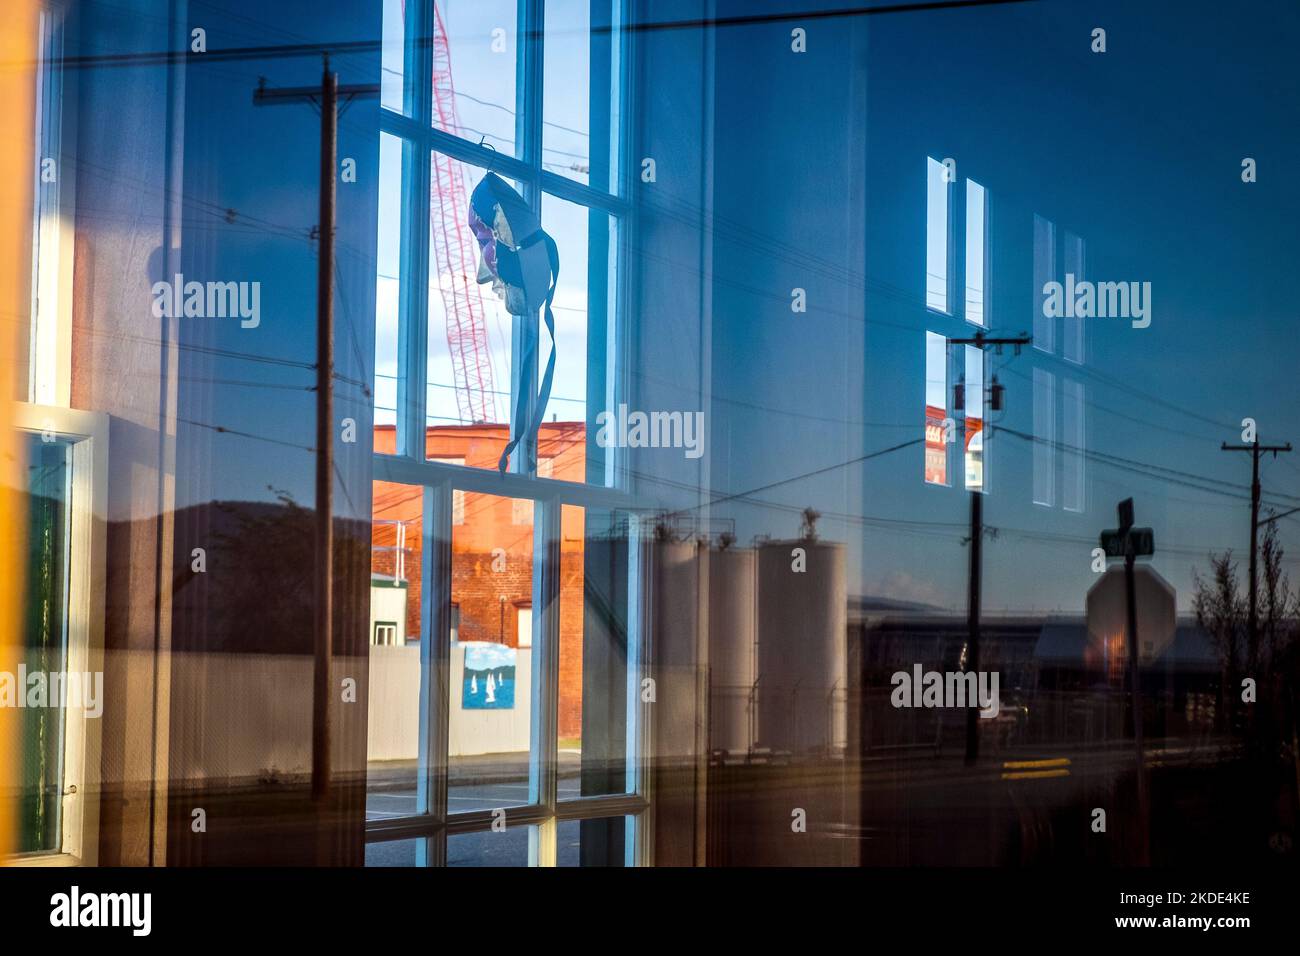 Masque féminin donnant sur une fenêtre bleue dans une petite ville Banque D'Images